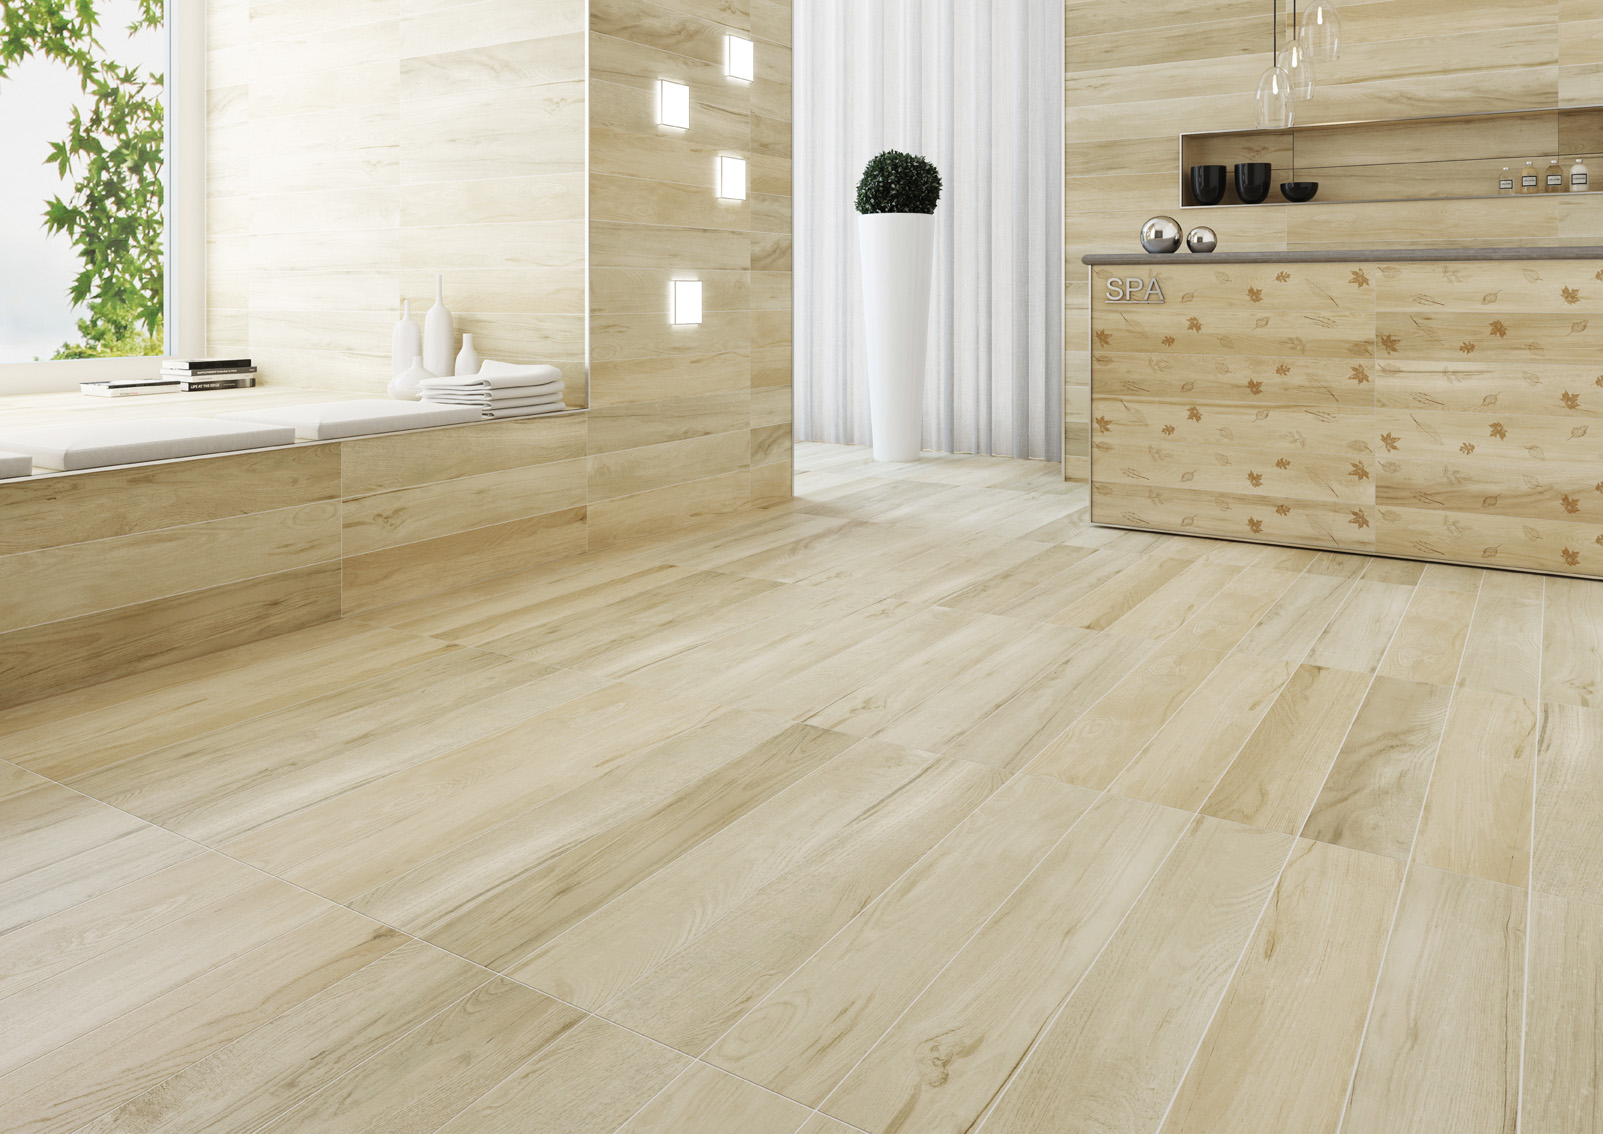 Gạch giả gỗ GDW02 tone lạnh tạo cảm giác “ăn gian diện tích” rất tốt, đem lại vẻ đẹp khác biệt cho căn phòng của bạn một cách vô cùng tinh tế.